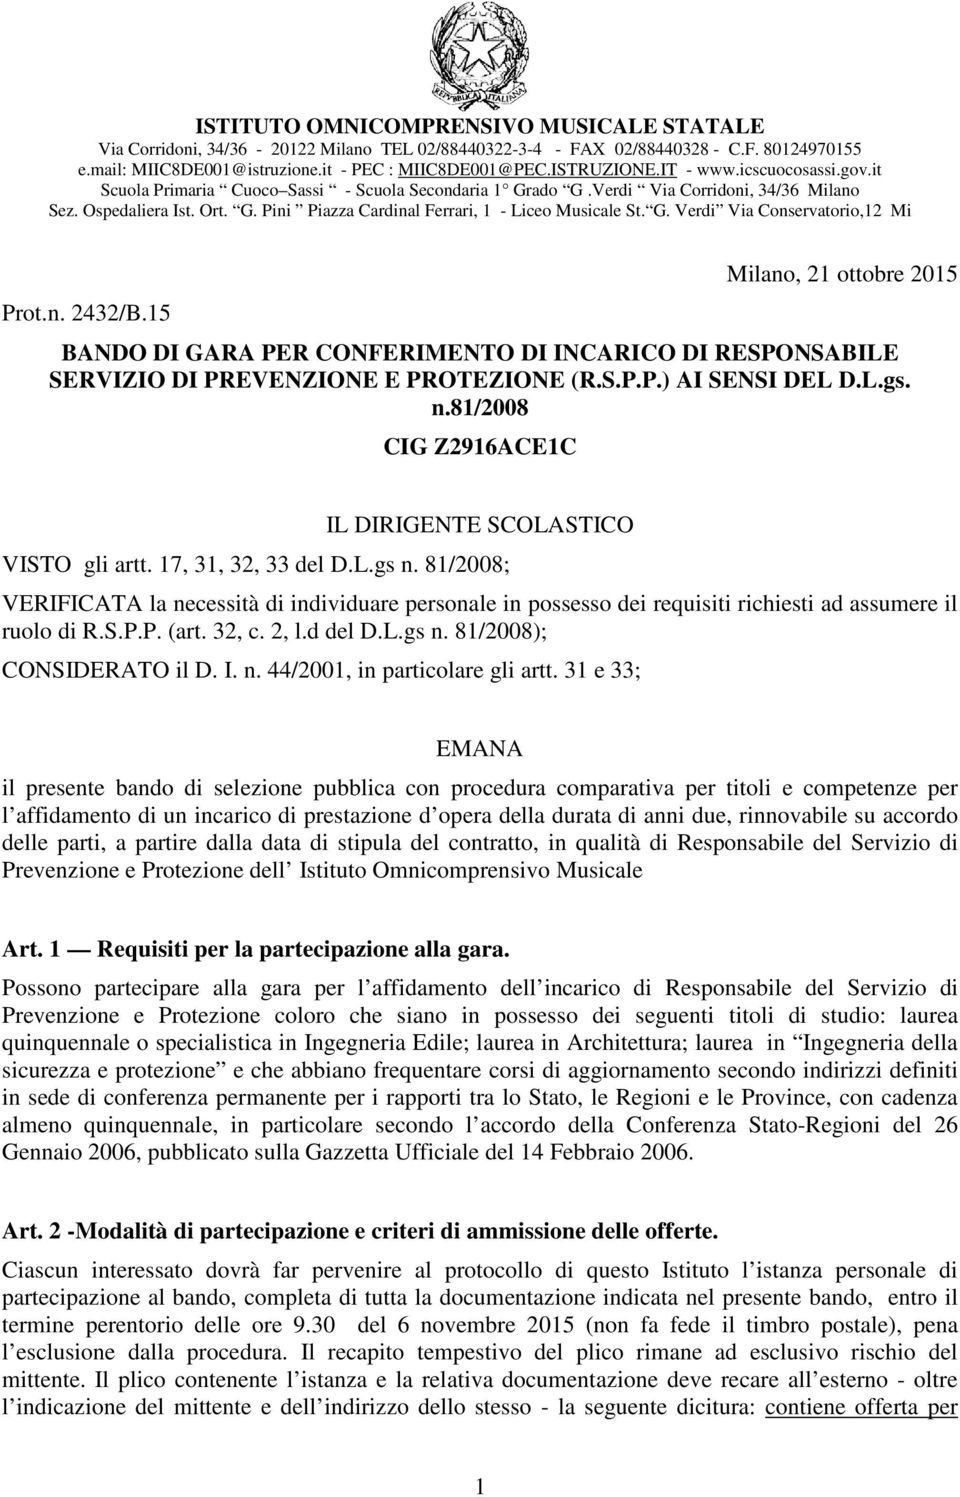 G. Verdi Via Conservatorio,12 Mi Prot.n. 2432/B.15 Milano, 21 ottobre 2015 BANDO DI GARA PER CONFERIMENTO DI INCARICO DI RESPONSABILE SERVIZIO DI PREVENZIONE E PROTEZIONE (R.S.P.P.) AI SENSI DEL D.L.gs.